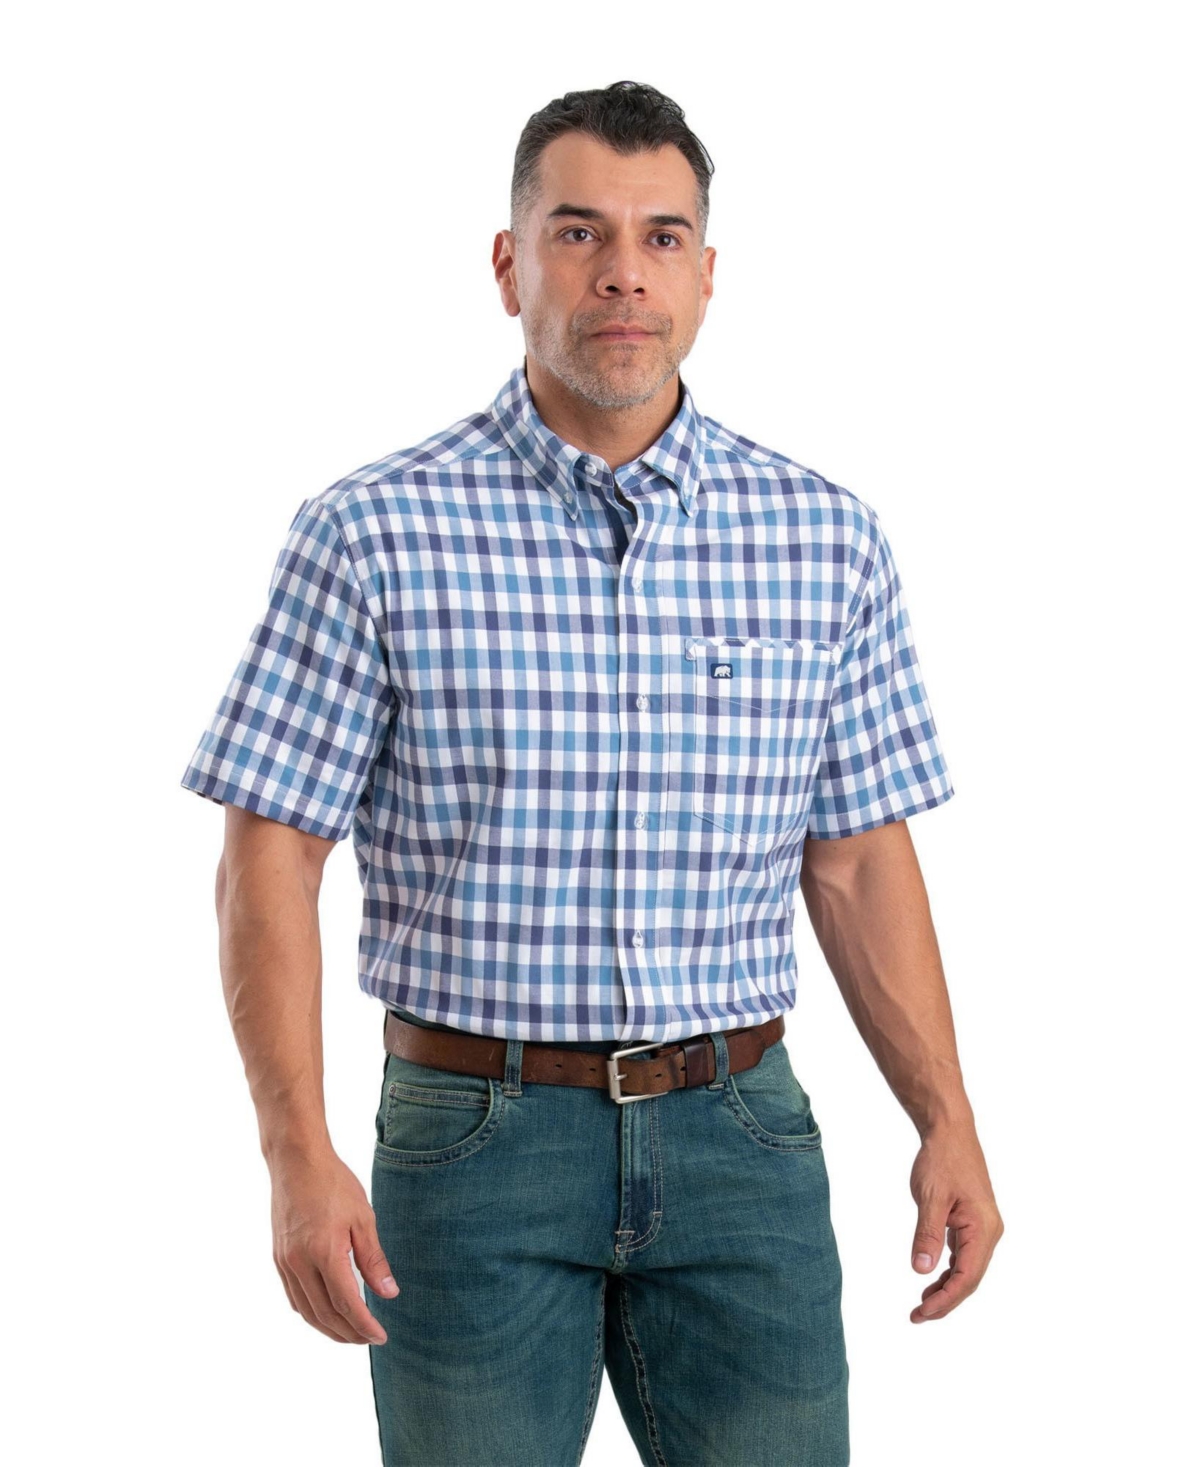 Men's eman Flex Short Sleeve Button Down Shirt - Plaid gray a